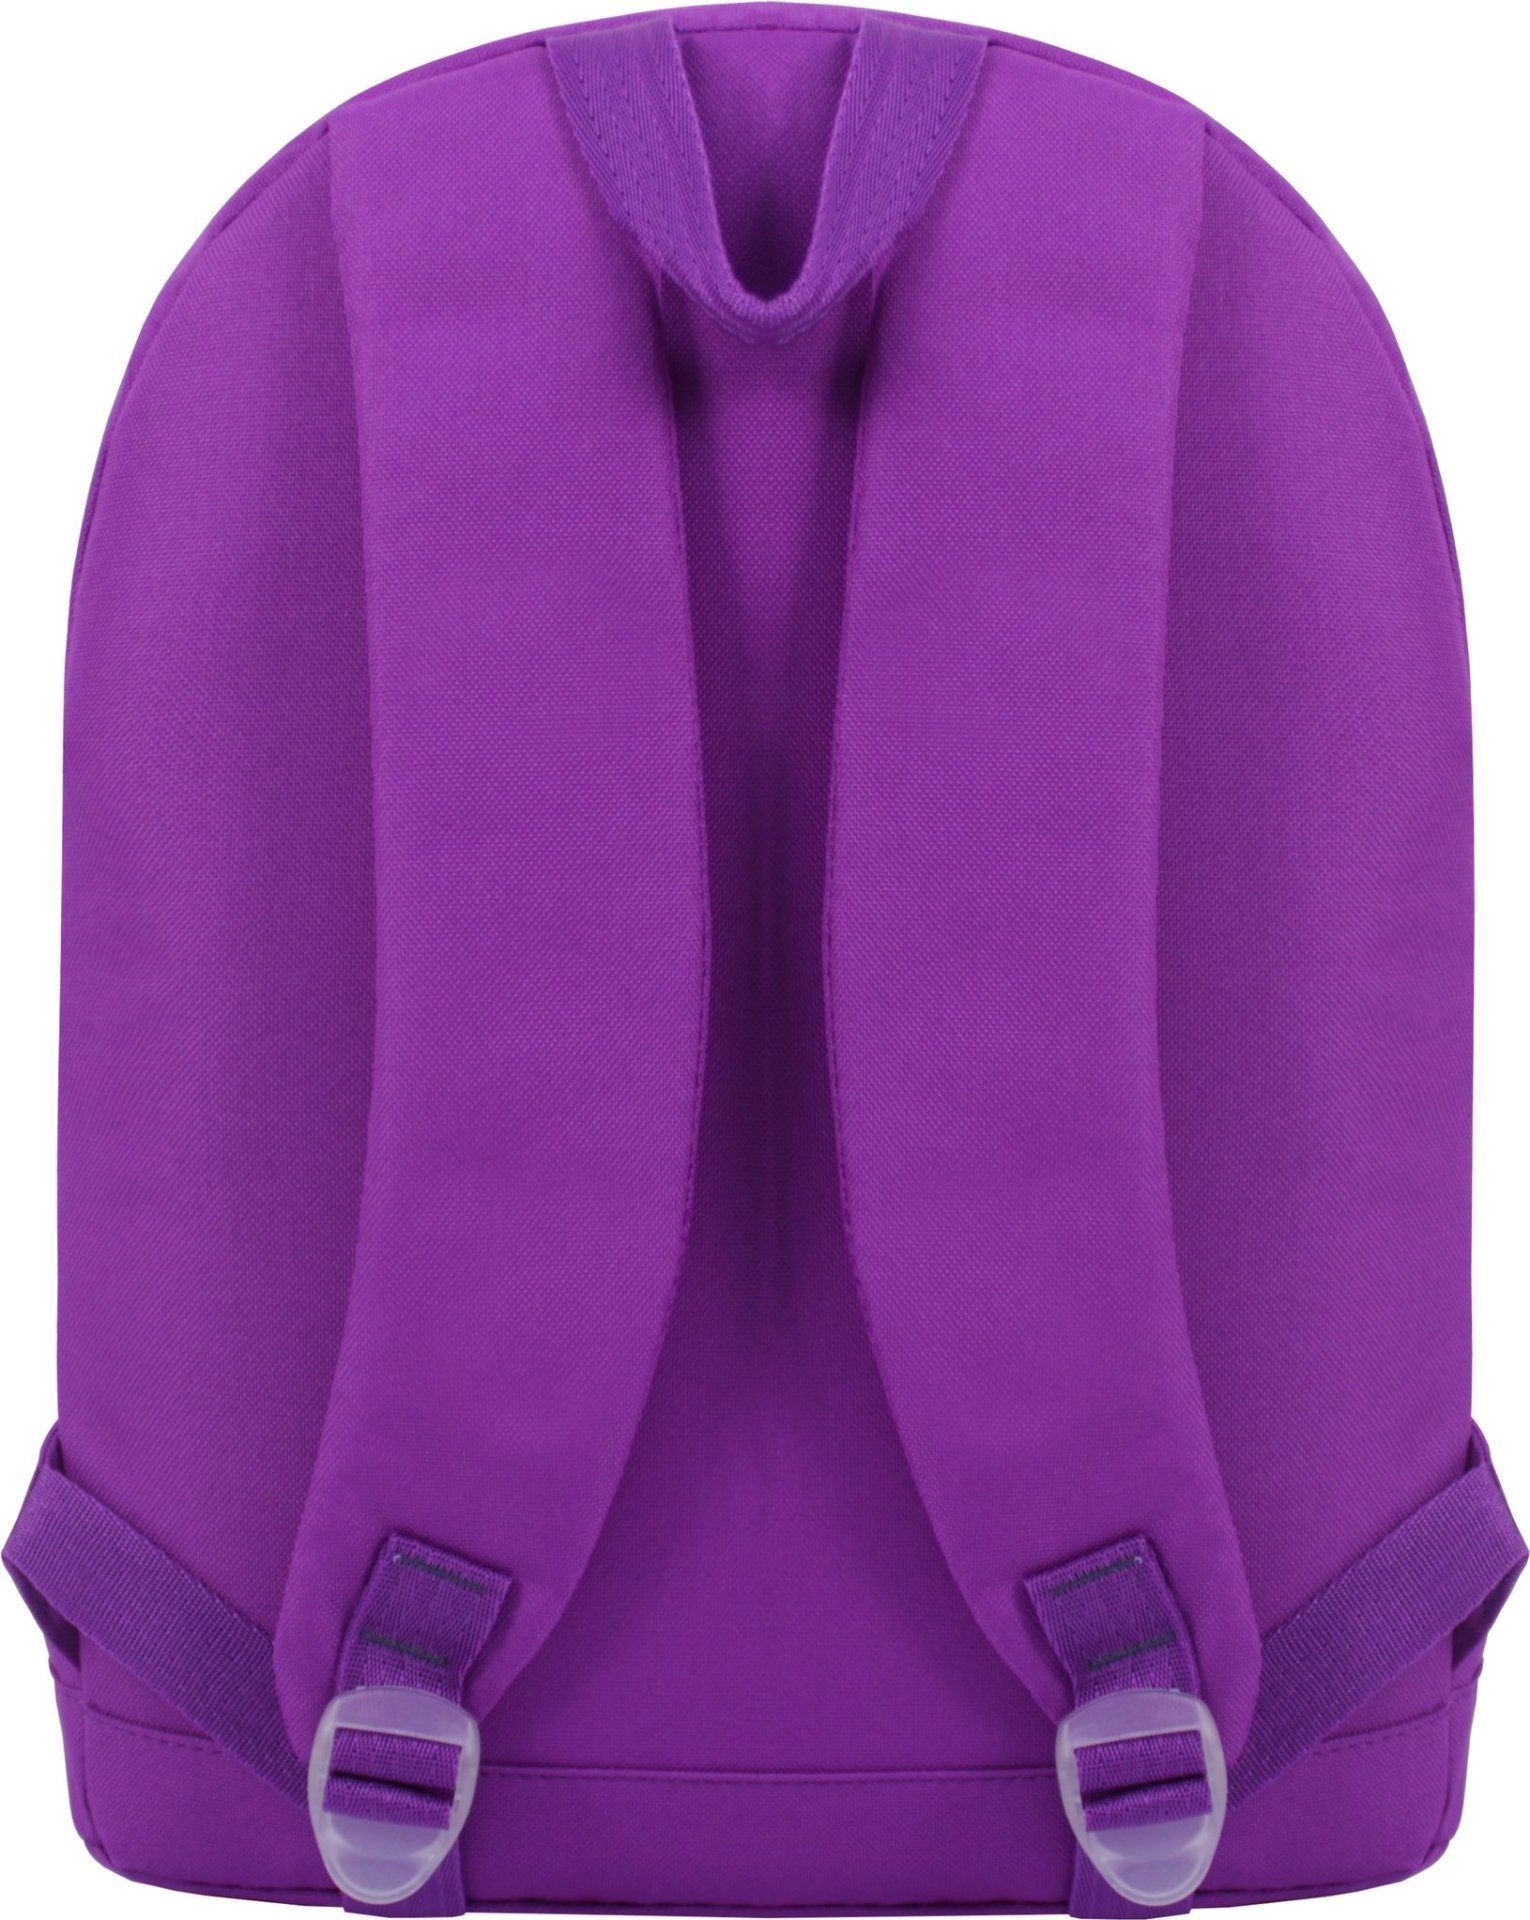 Яркий фиолетовый рюкзак из текстиля на змейке Bagland (53730)